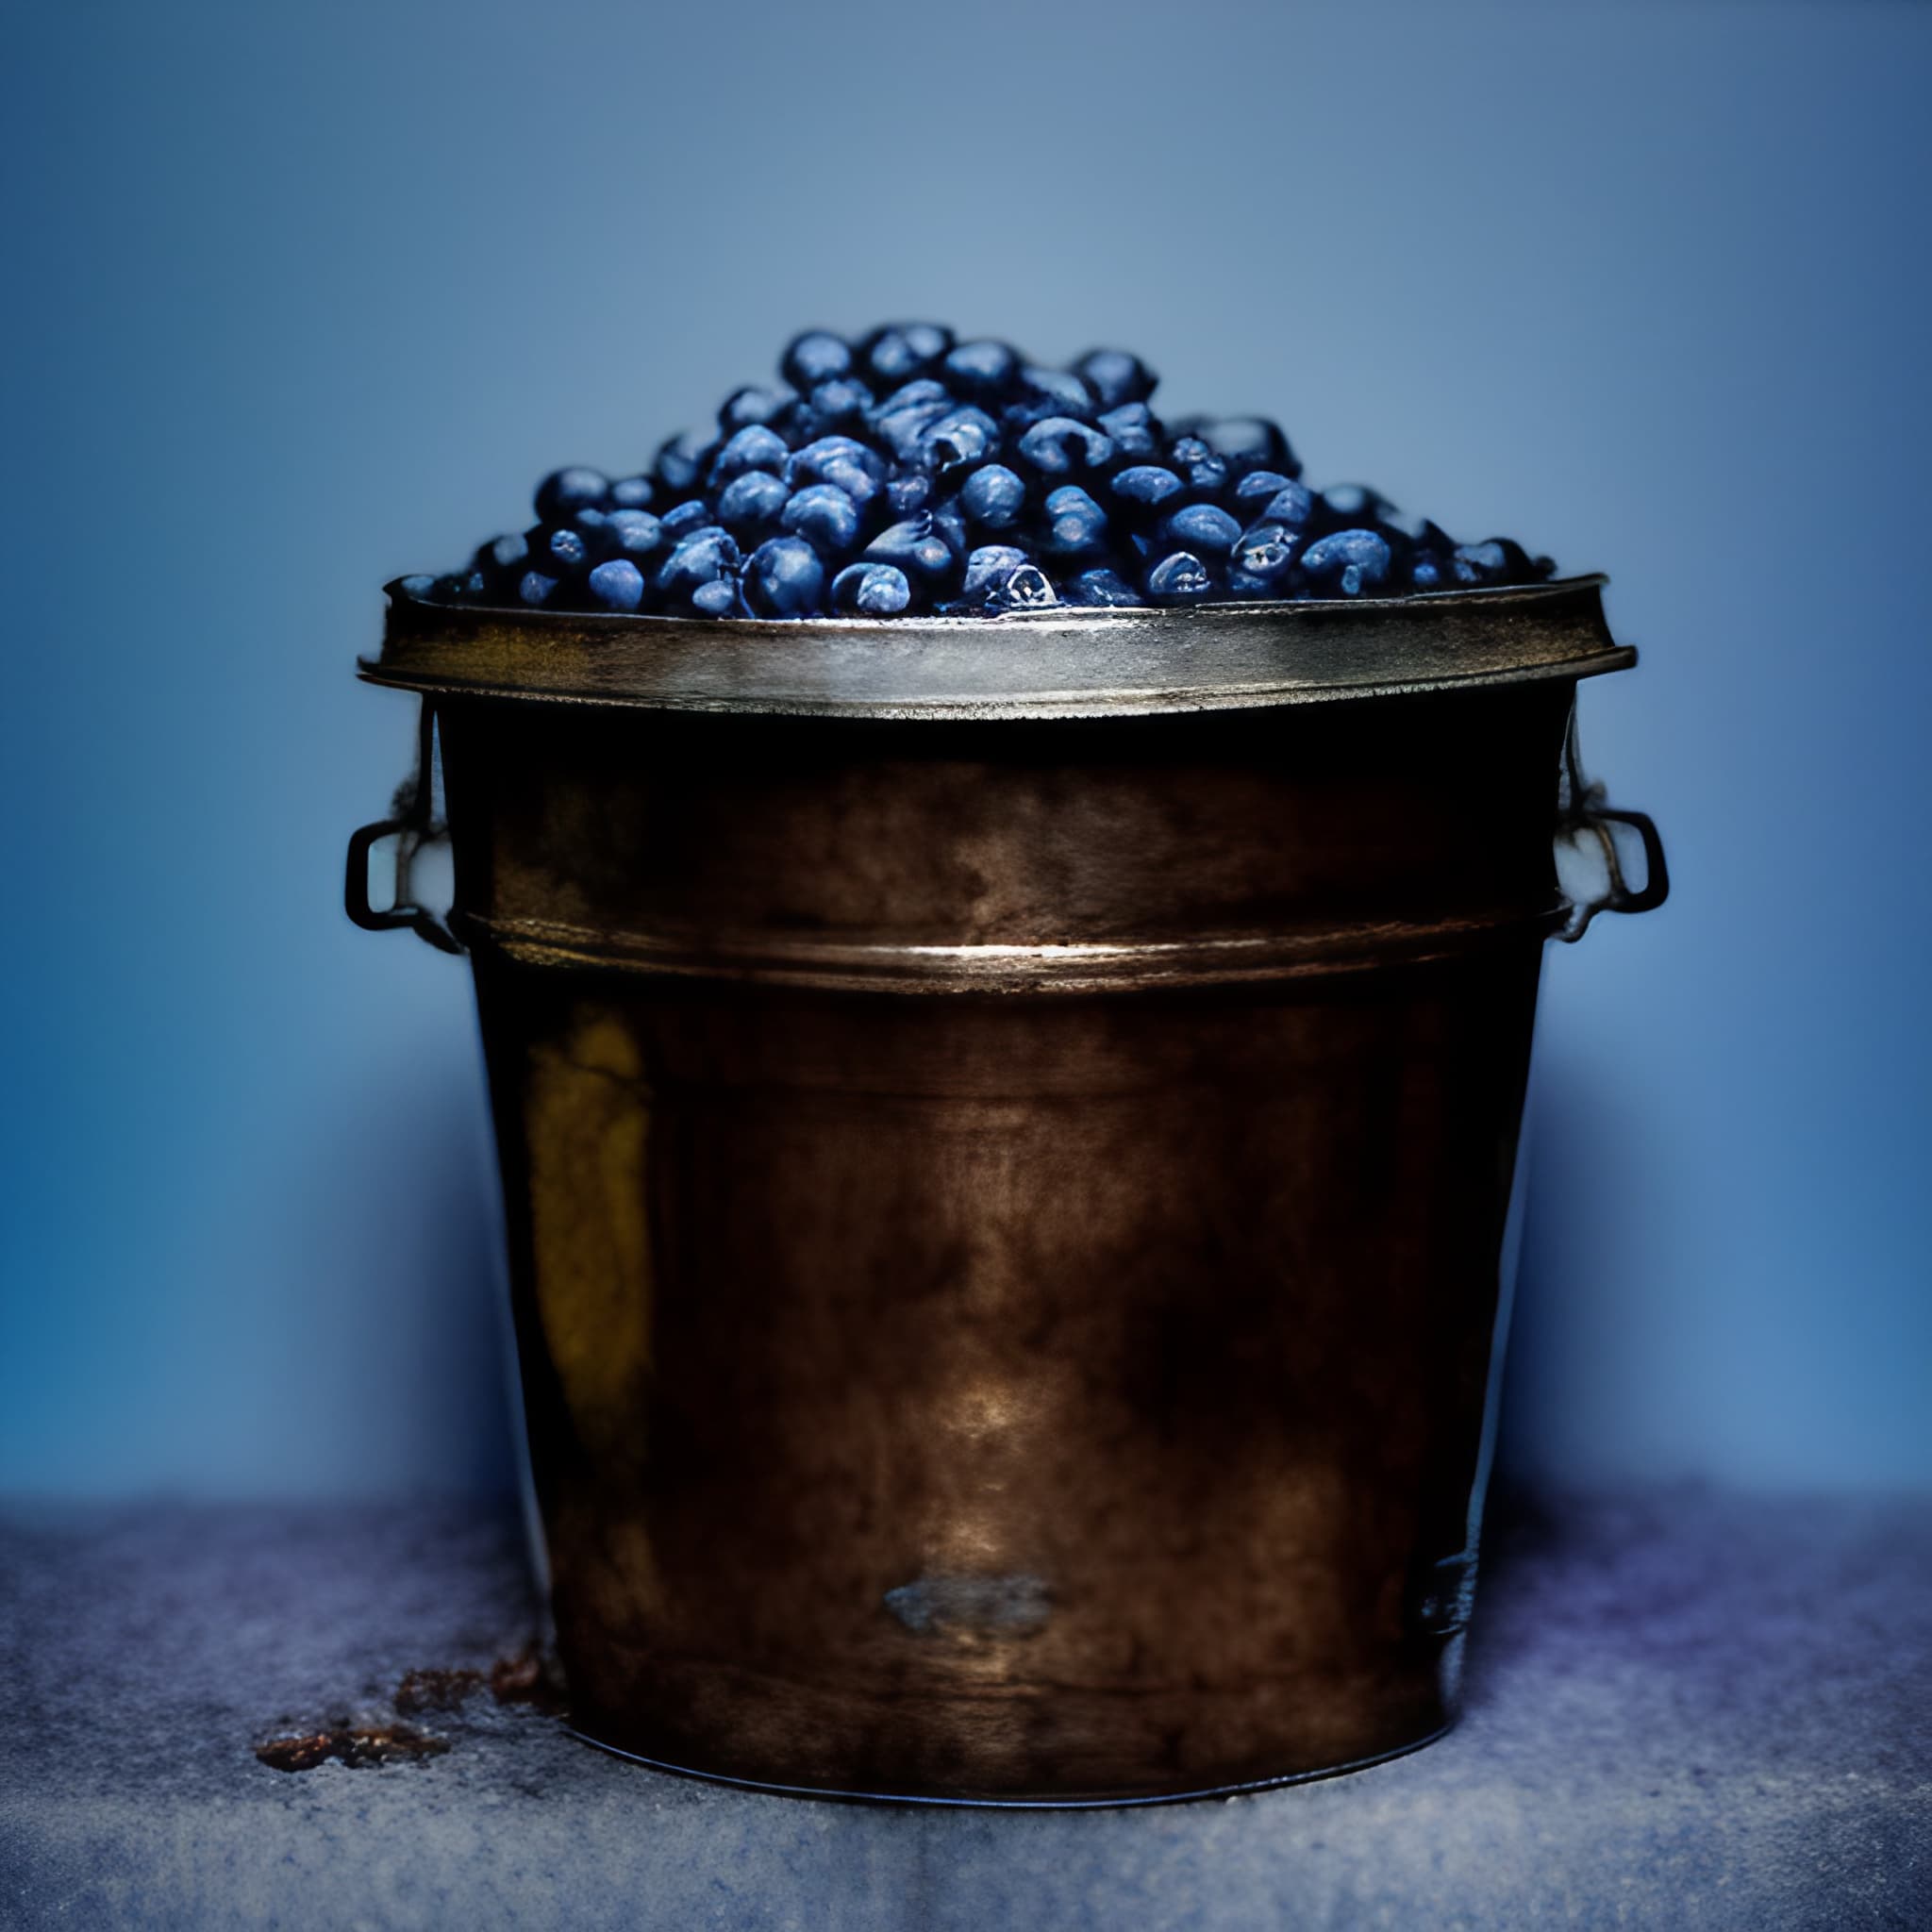 48 Best U-Pick Blueberry Farms in Michigan